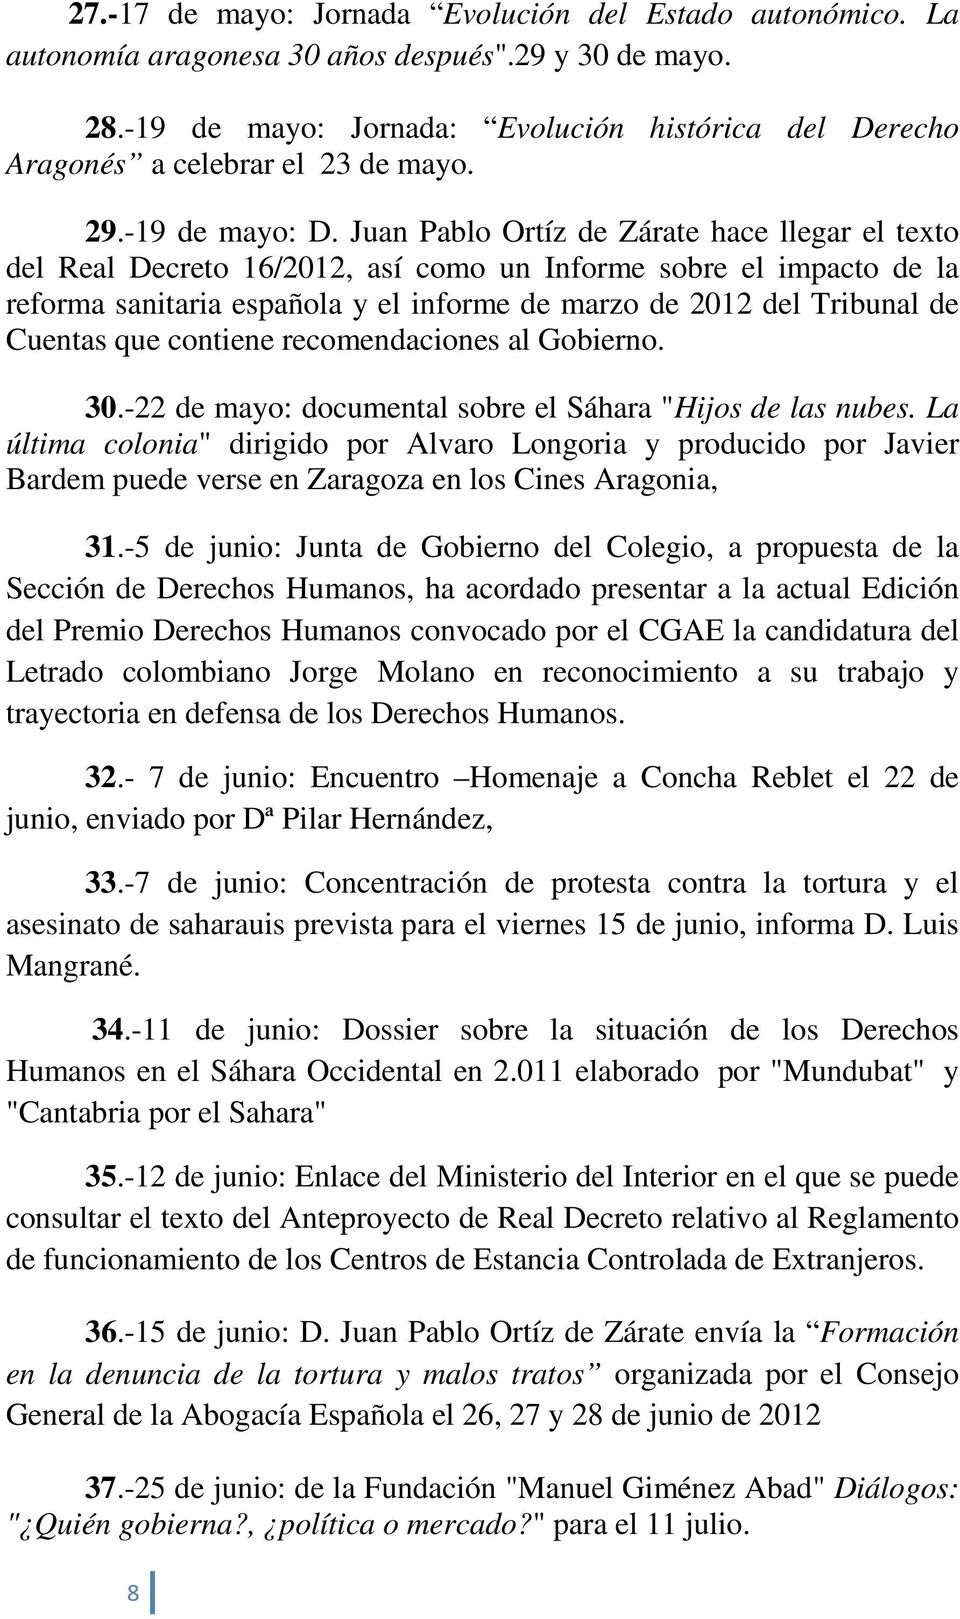 Juan Pablo Ortíz de Zárate hace llegar el texto del Real Decreto 16/2012, así como un Informe sobre el impacto de la reforma sanitaria española y el informe de marzo de 2012 del Tribunal de Cuentas